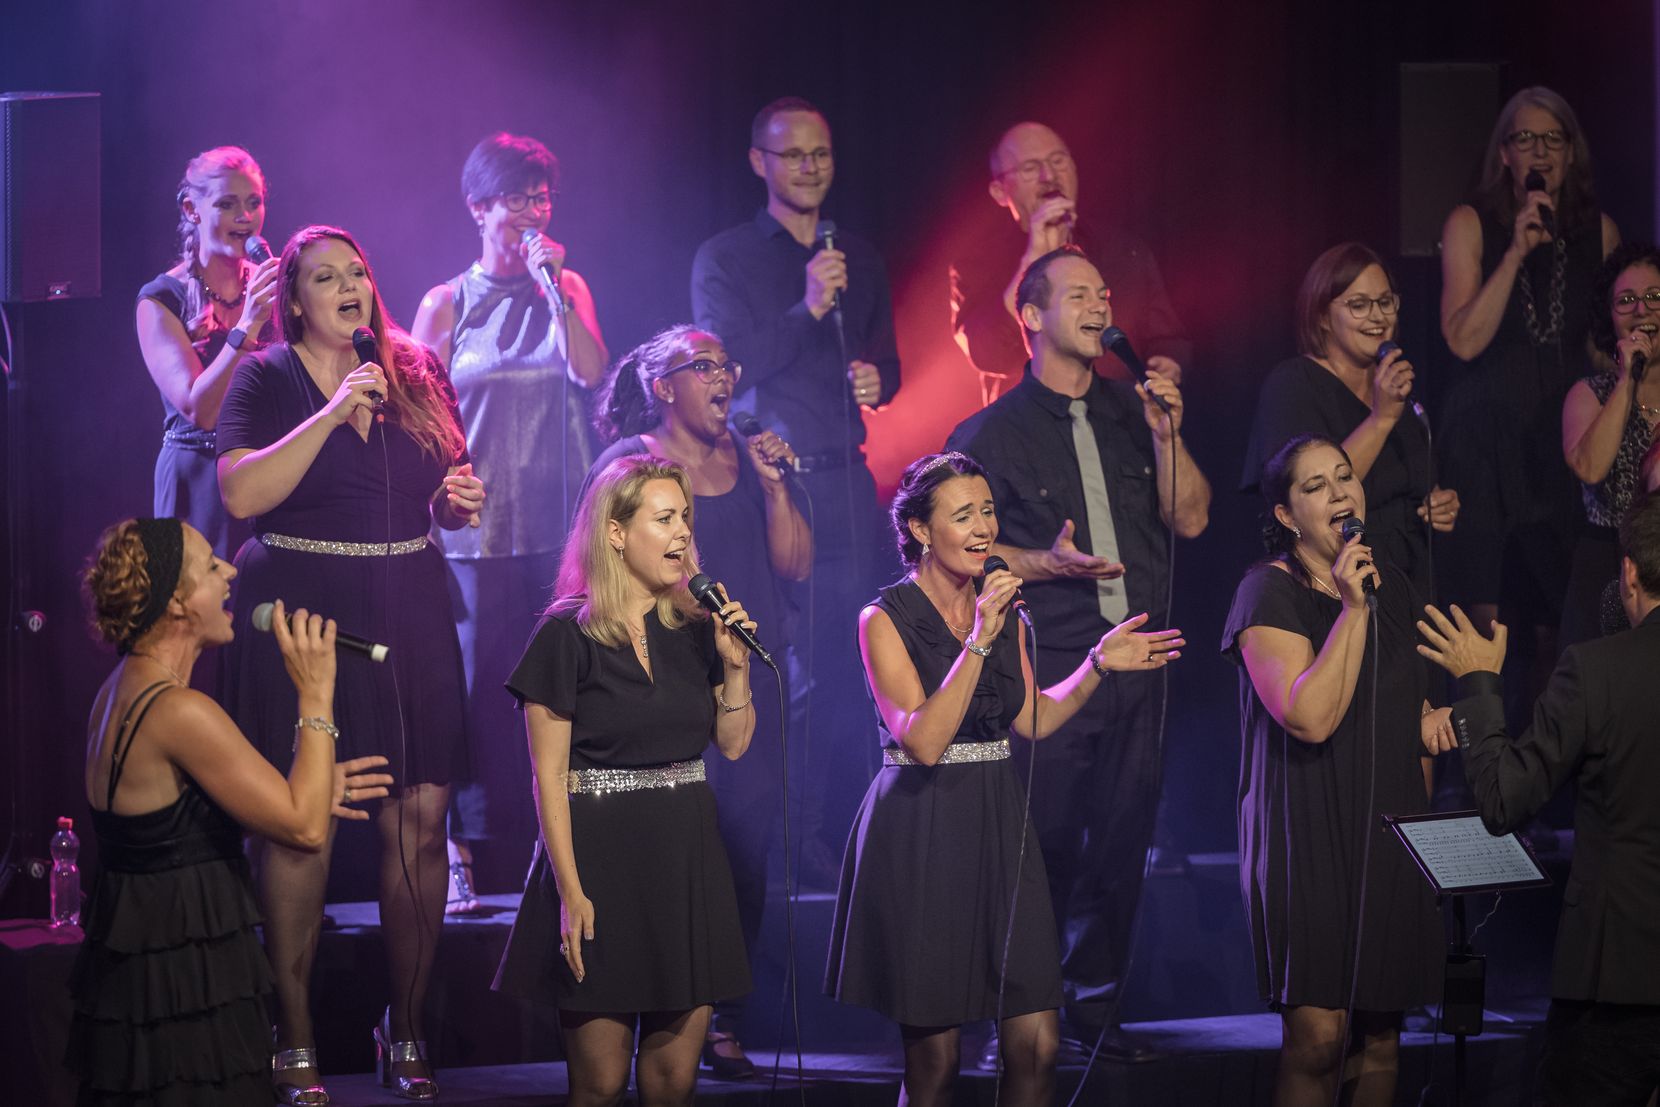 Wettbewerb für das Gospelkonzert im Stadthaussaal in Illnau/Effretikon am 12. November. Zu sehen ist der singende Chor.